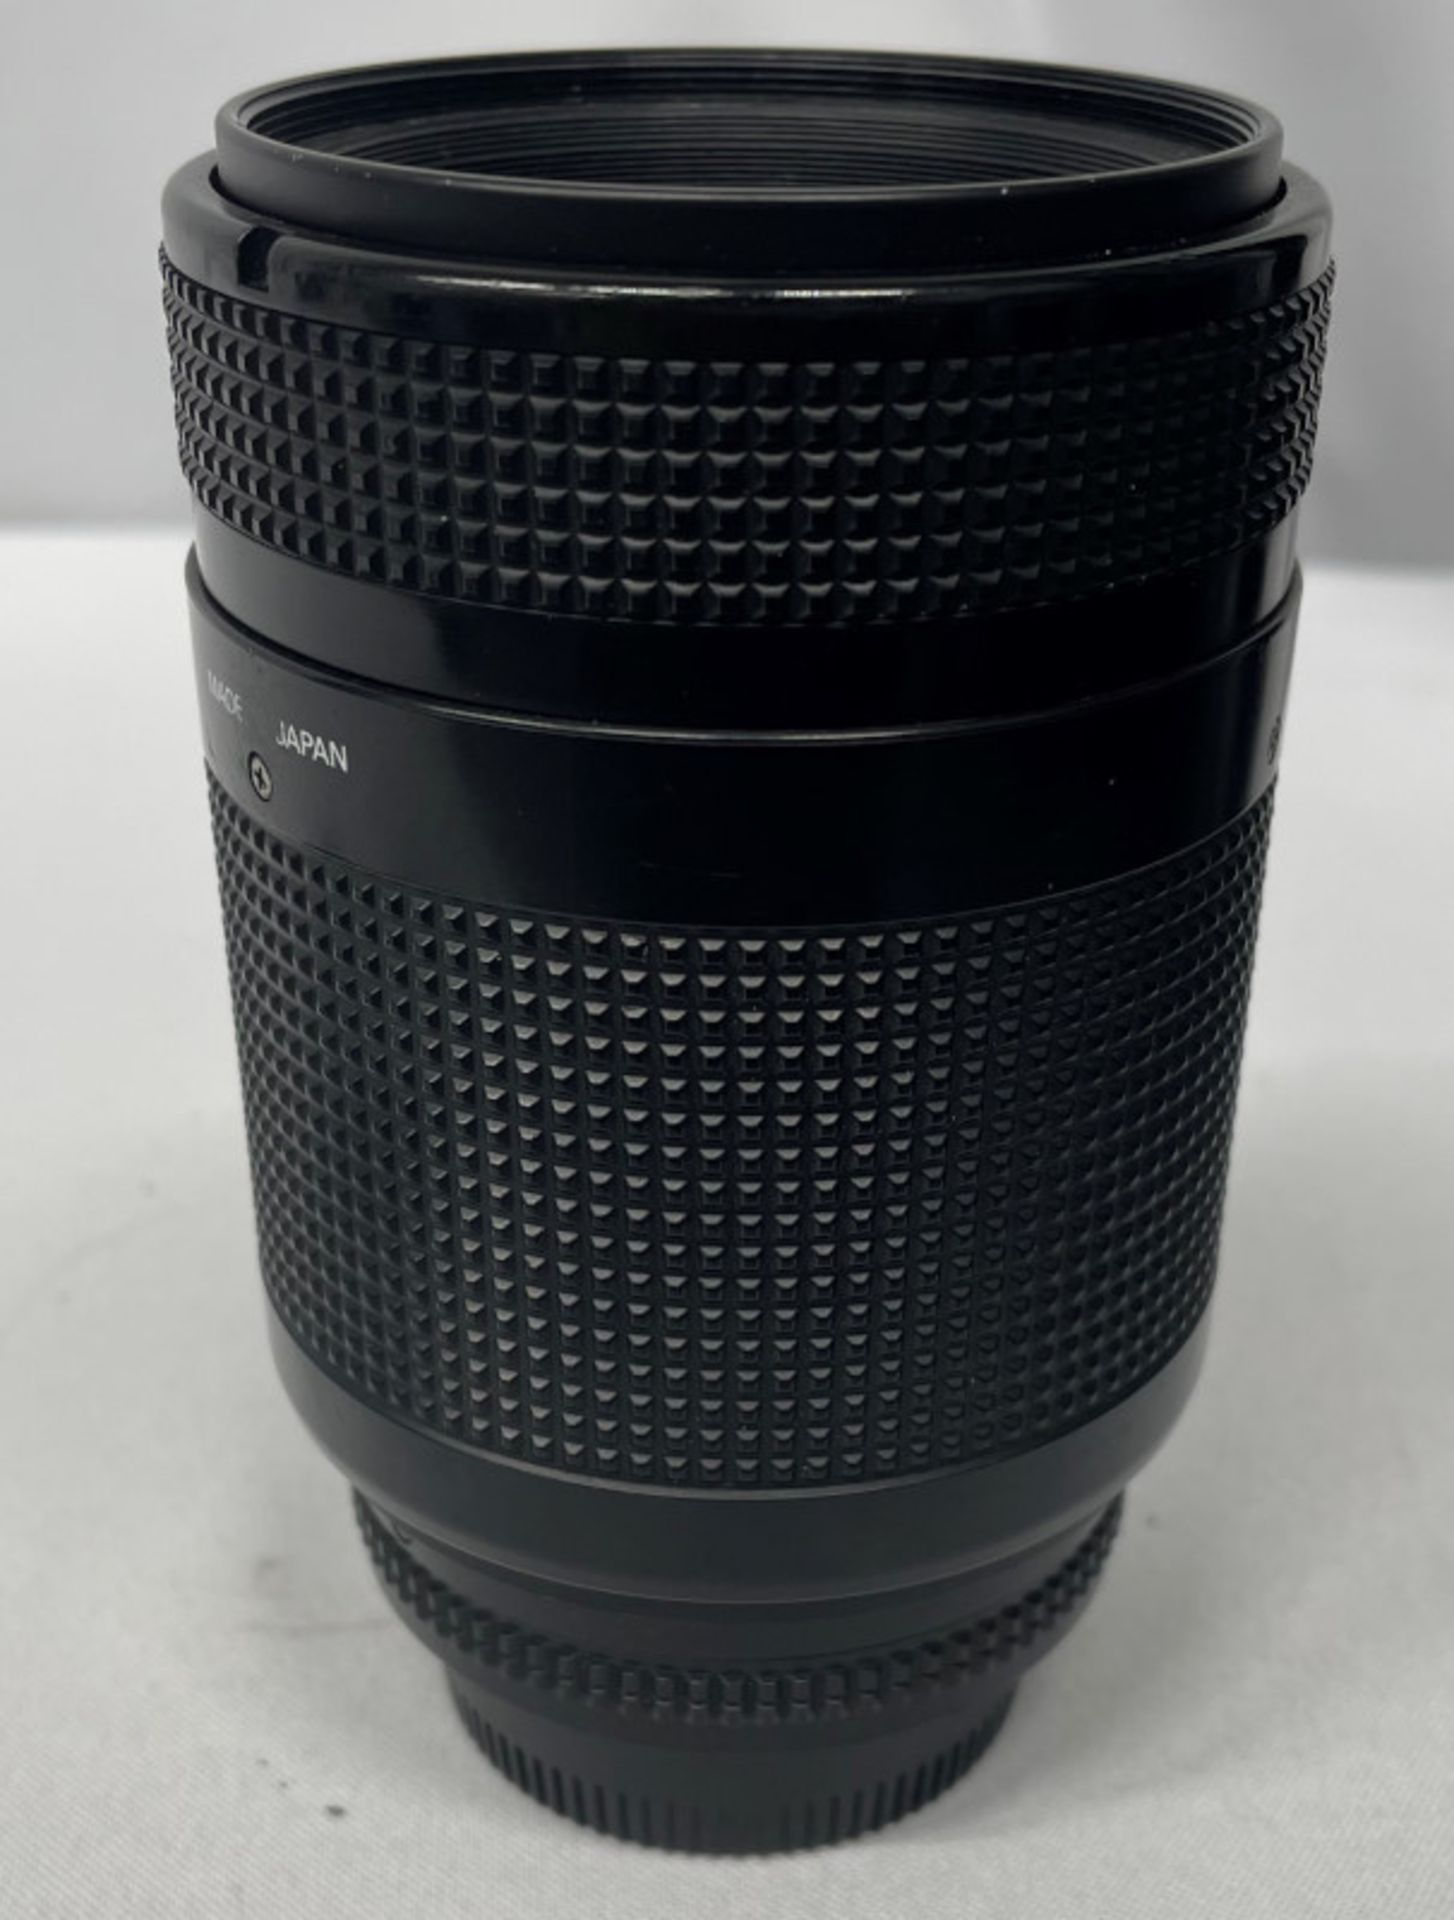 Nikon AF Nikkor 70-210mm - 1:4-5.6 Lens - Serial No. 2569314 with Kenko PRO1D UV(W) 62mm Filter - Image 2 of 5